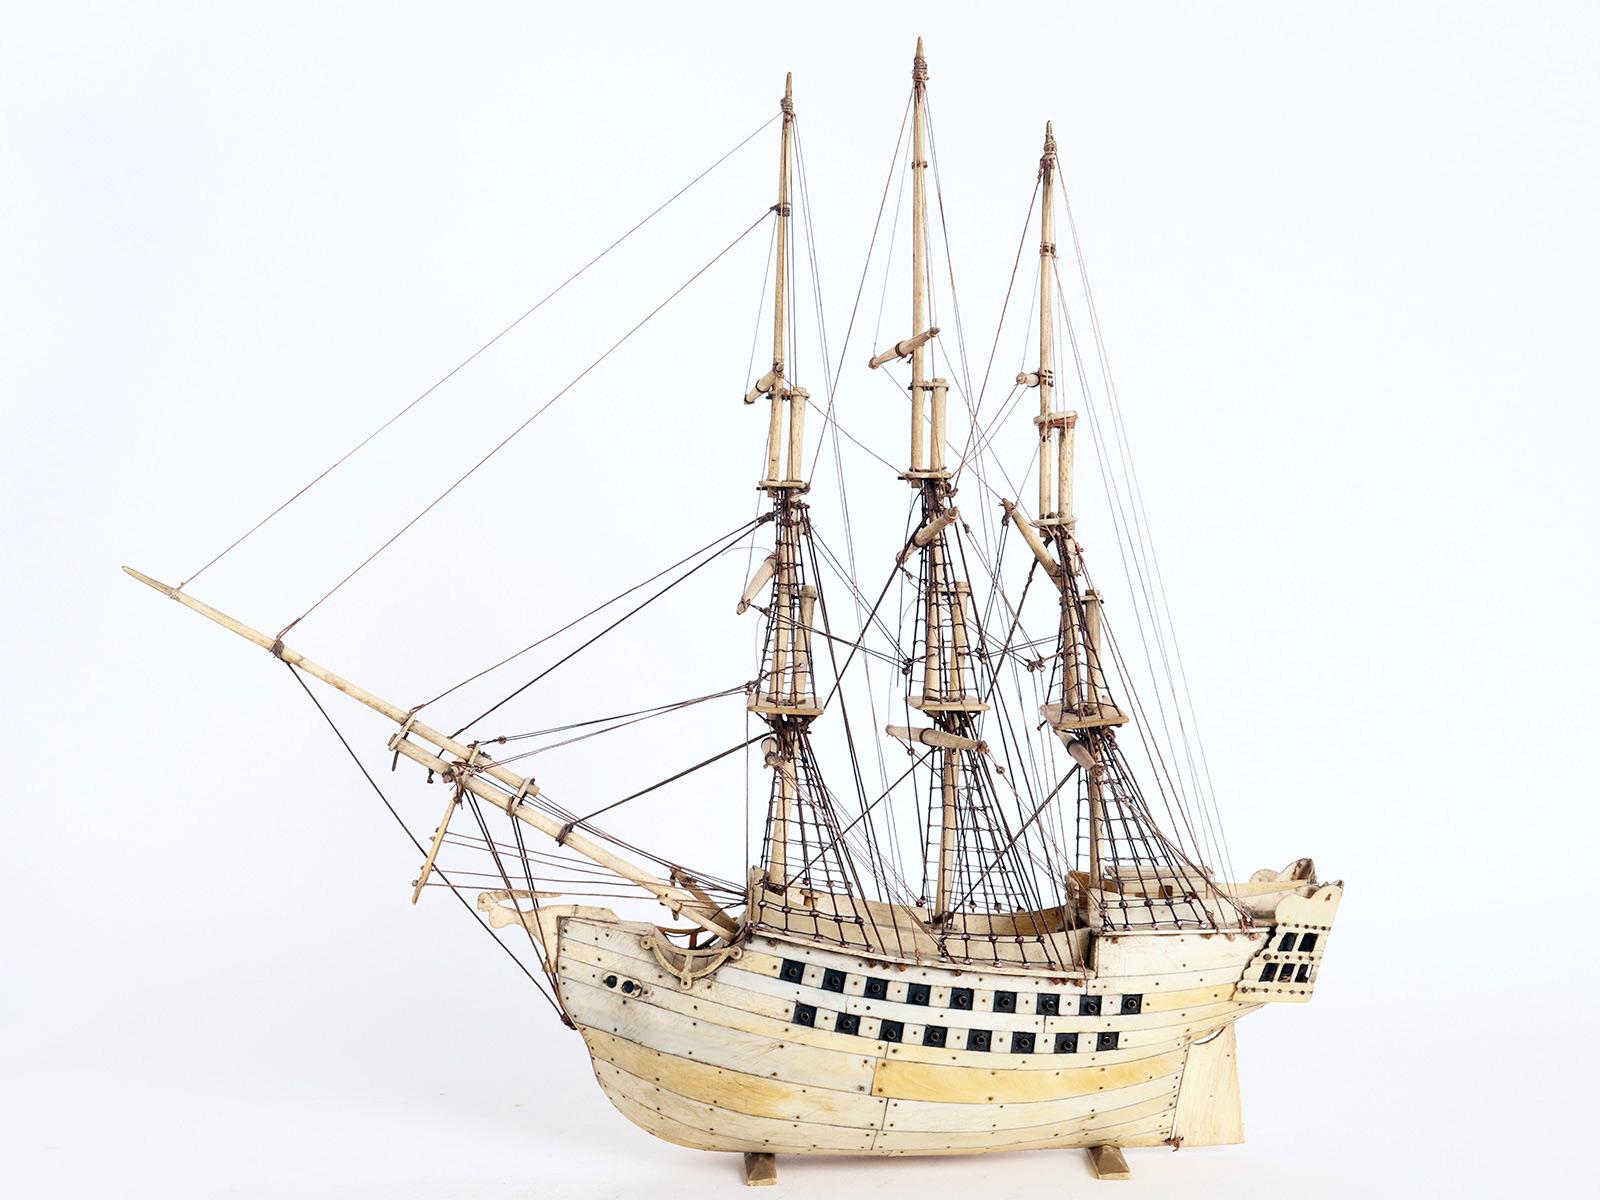 Ein britisches Modell eines Segelschiffs, hergestellt aus Knochen. Hergestellt von französischen Kriegsgefangenen in britischen Gefängnissen während der Napoleonischen Kriege, die von 1793 bis 1815 und in den folgenden Jahren stattfanden. Prisoner